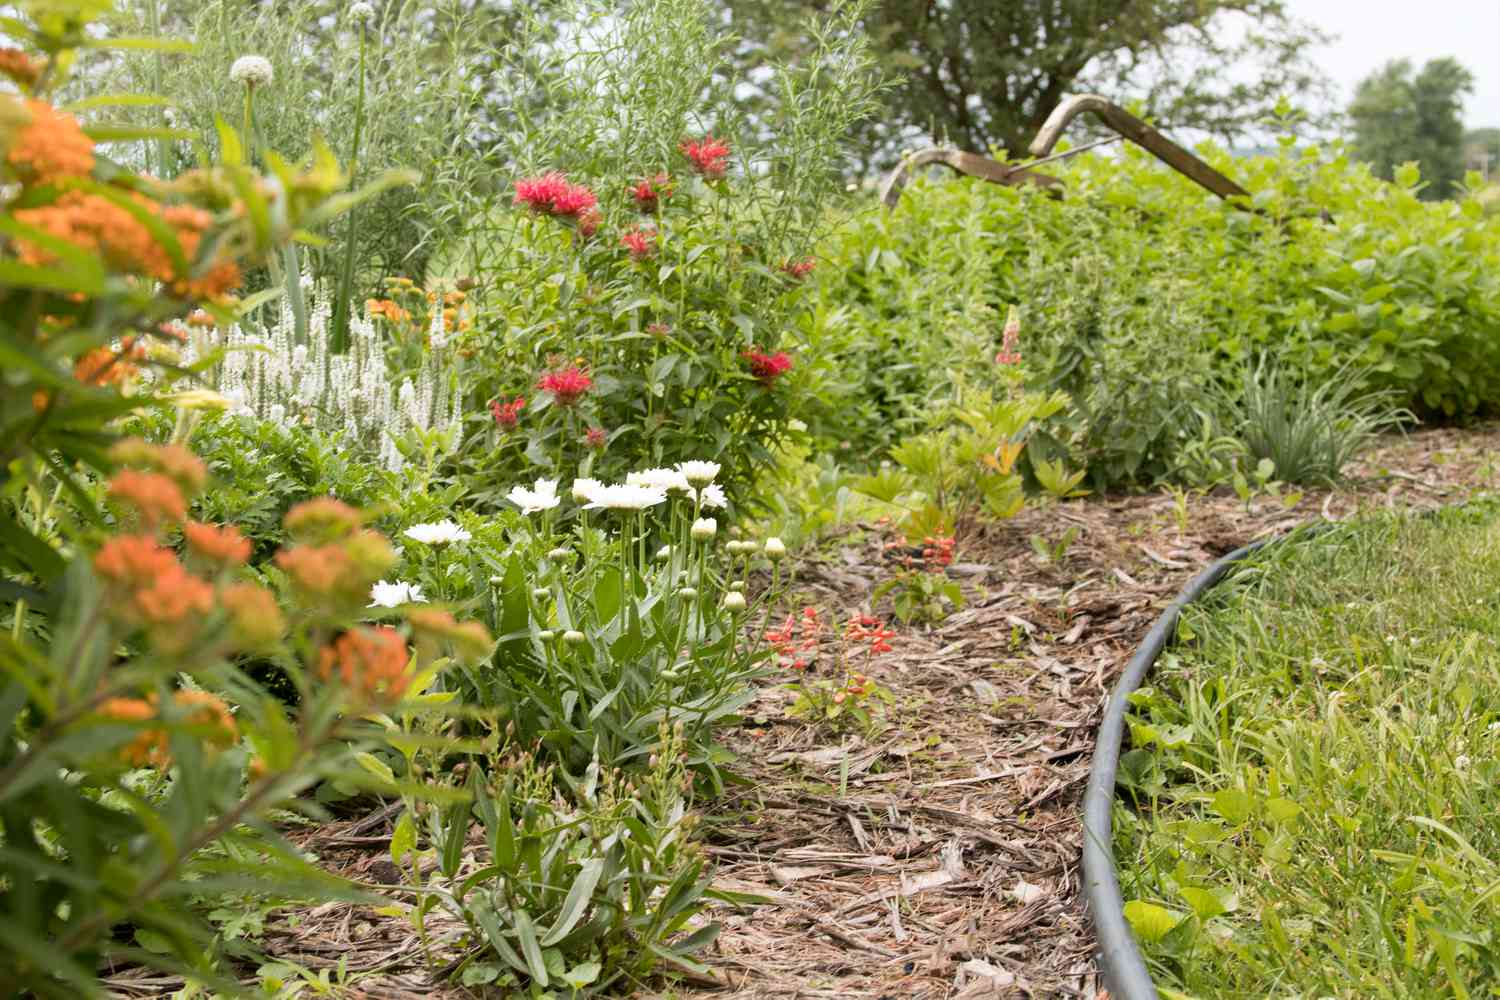 Diseño de jardín curvo con flores rosas, blancas y naranjas para atraer a los colibríes